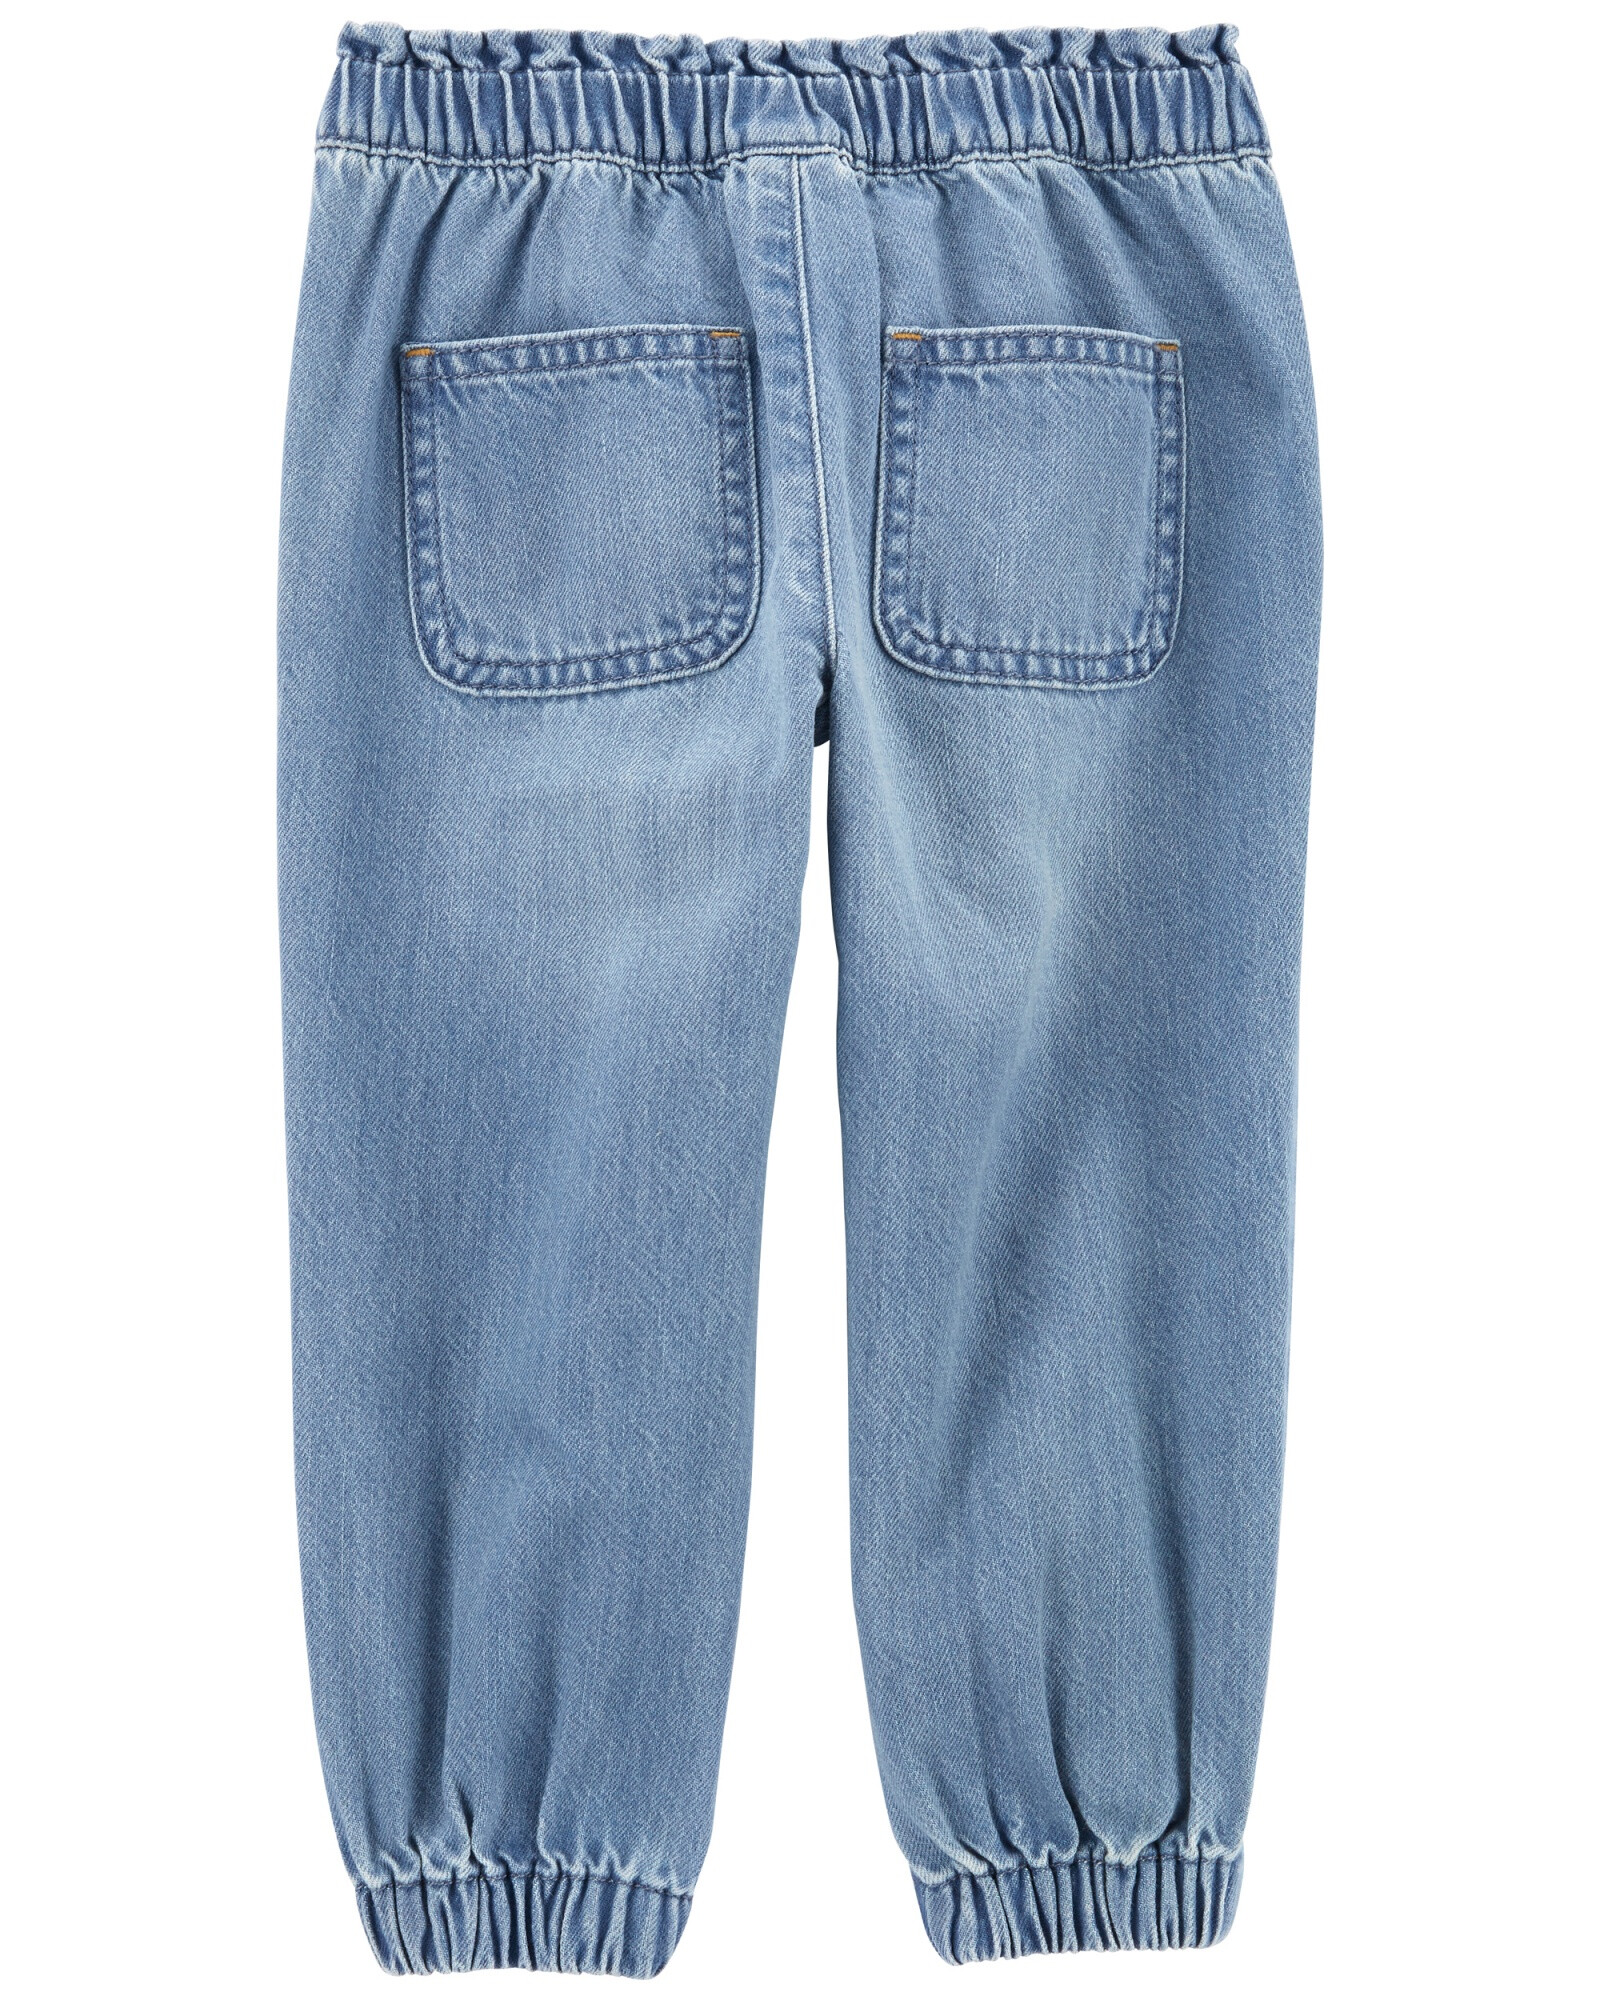 Pantalón de jean ajuste relajado. Talles 2-5T Sin color